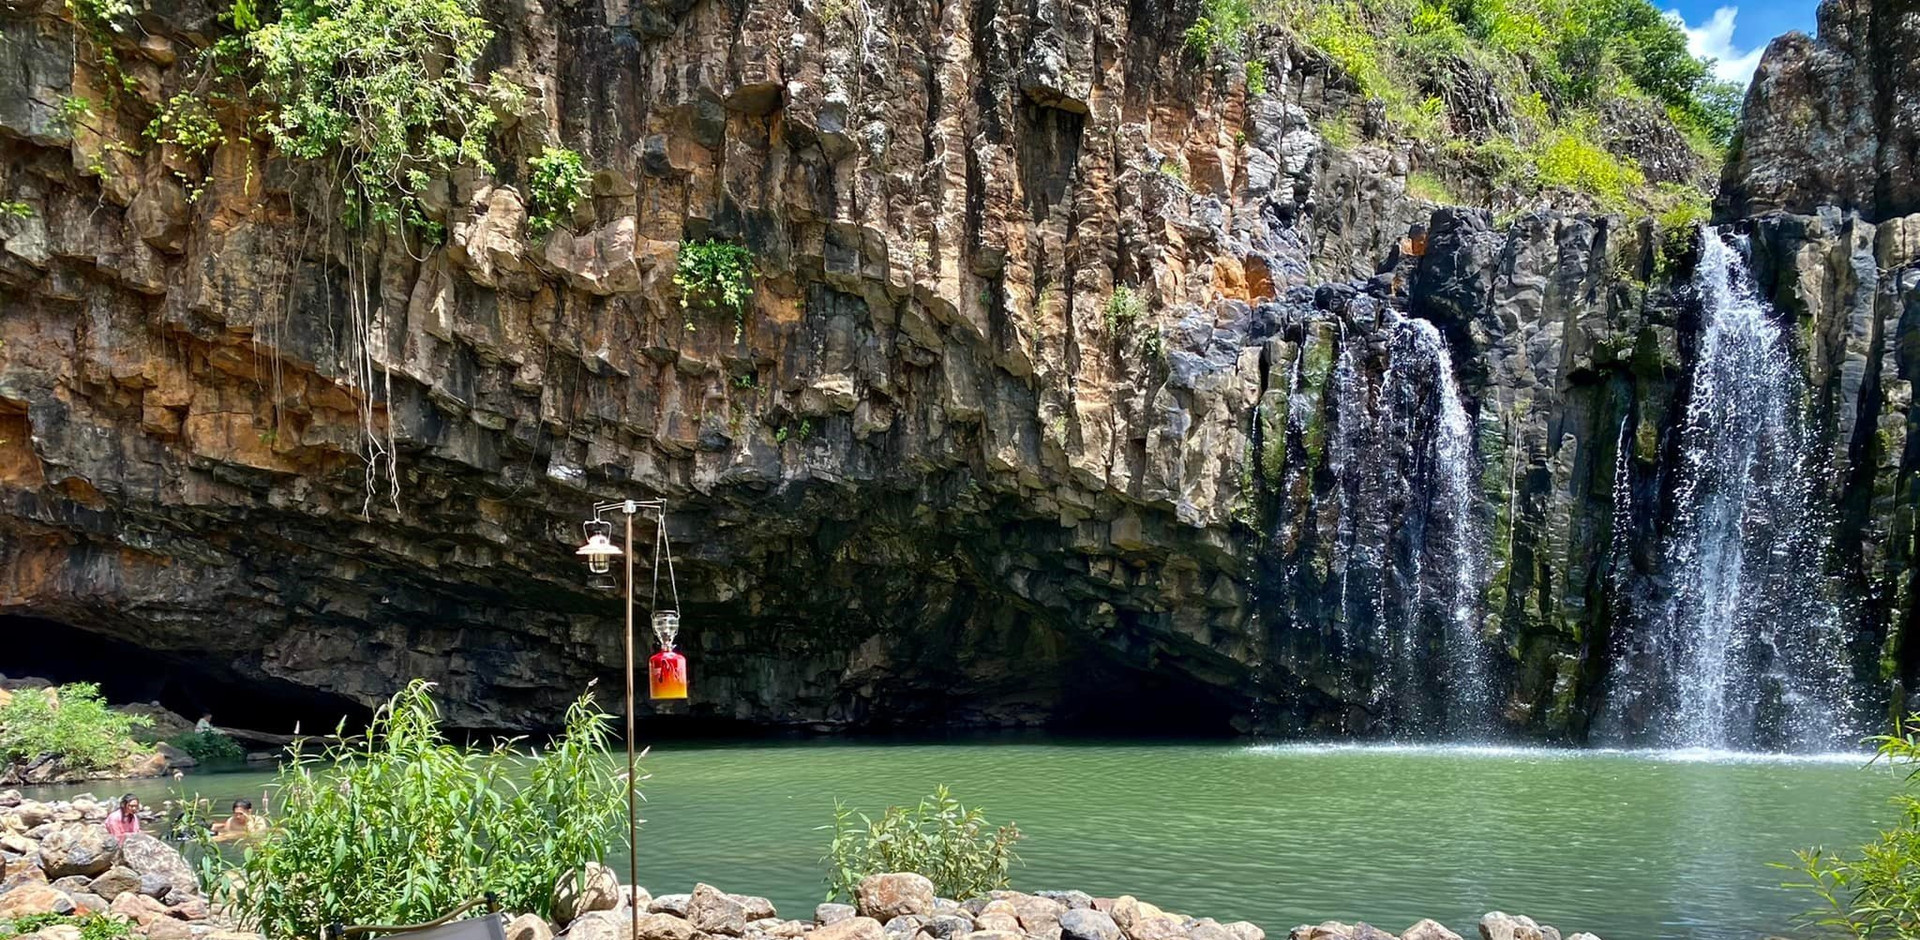 Du khách cực kỳ ấn tượng với khung cảnh thác Vực Hòm tung bọt nước trắng xóa xung quanh những cột đá sừng sững, uy nghi